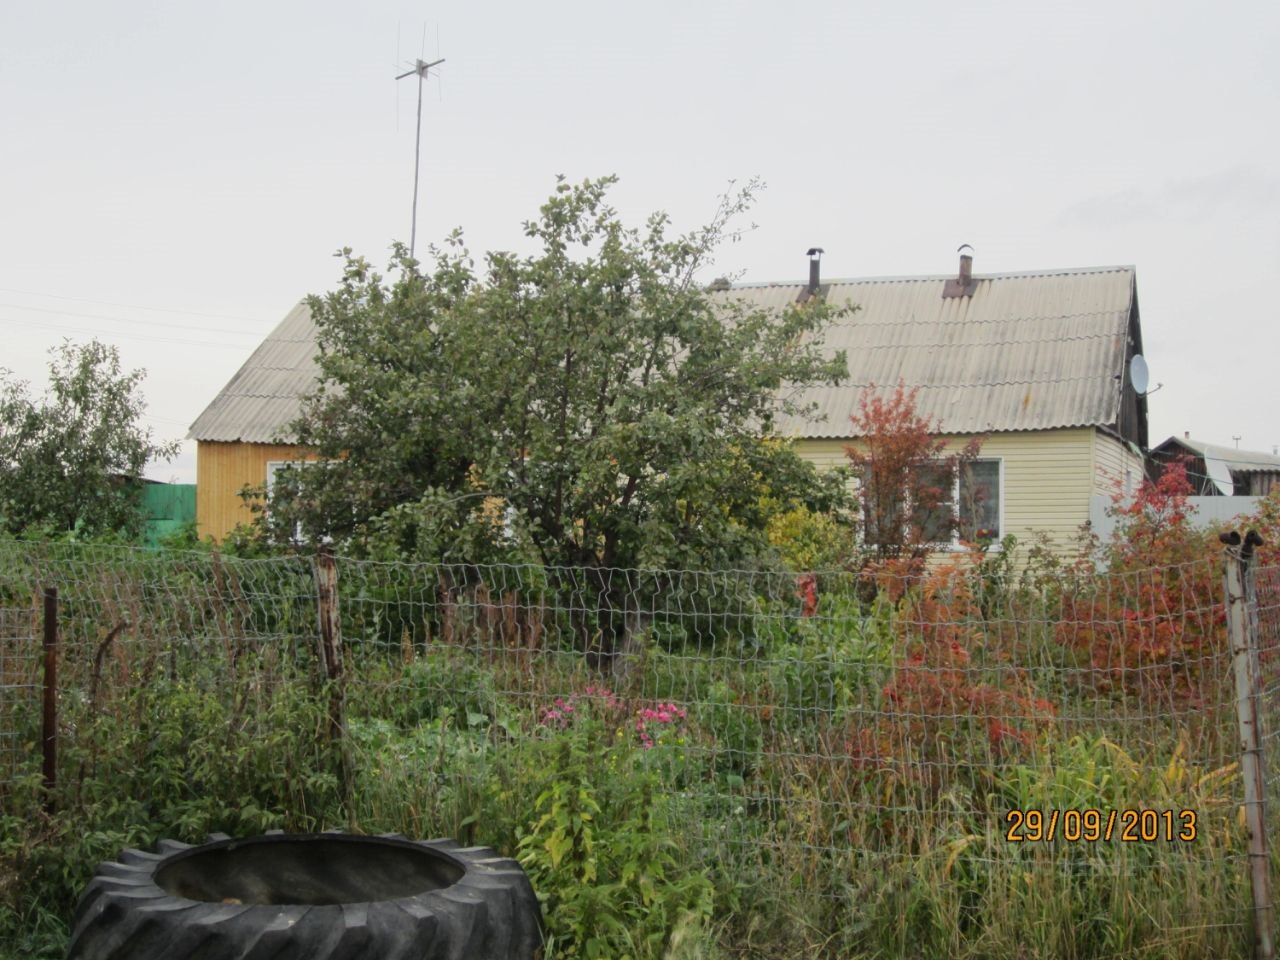 Купить дом в селе Песчанском в Щучанском районе в Курганской области — 9объявлений о продаже загородных домов на МирКвартир с ценами и фото